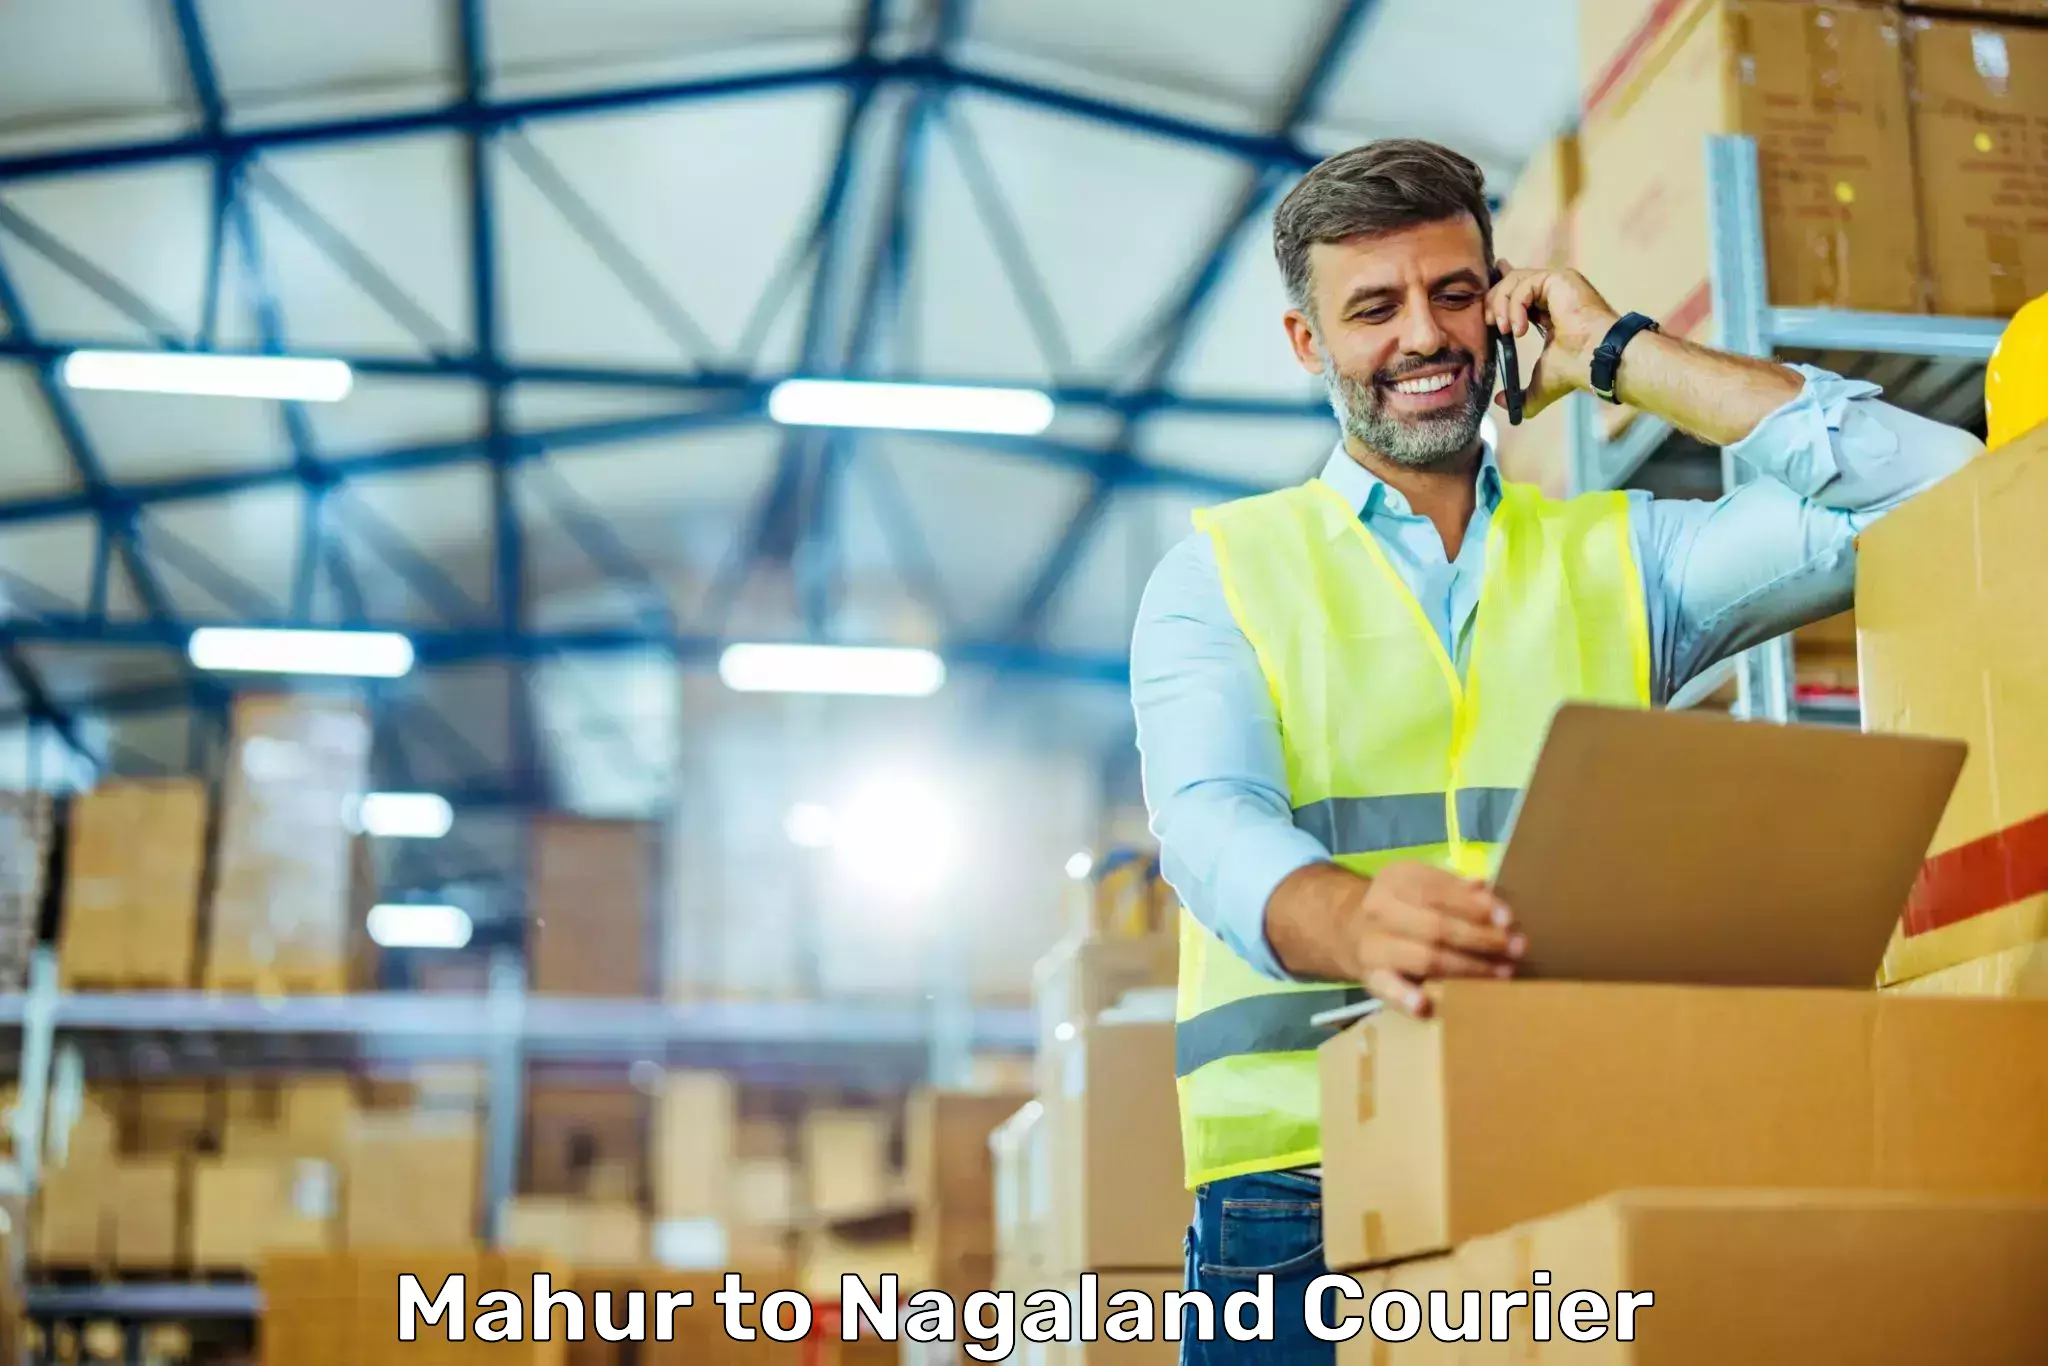 Express logistics service Mahur to Nagaland